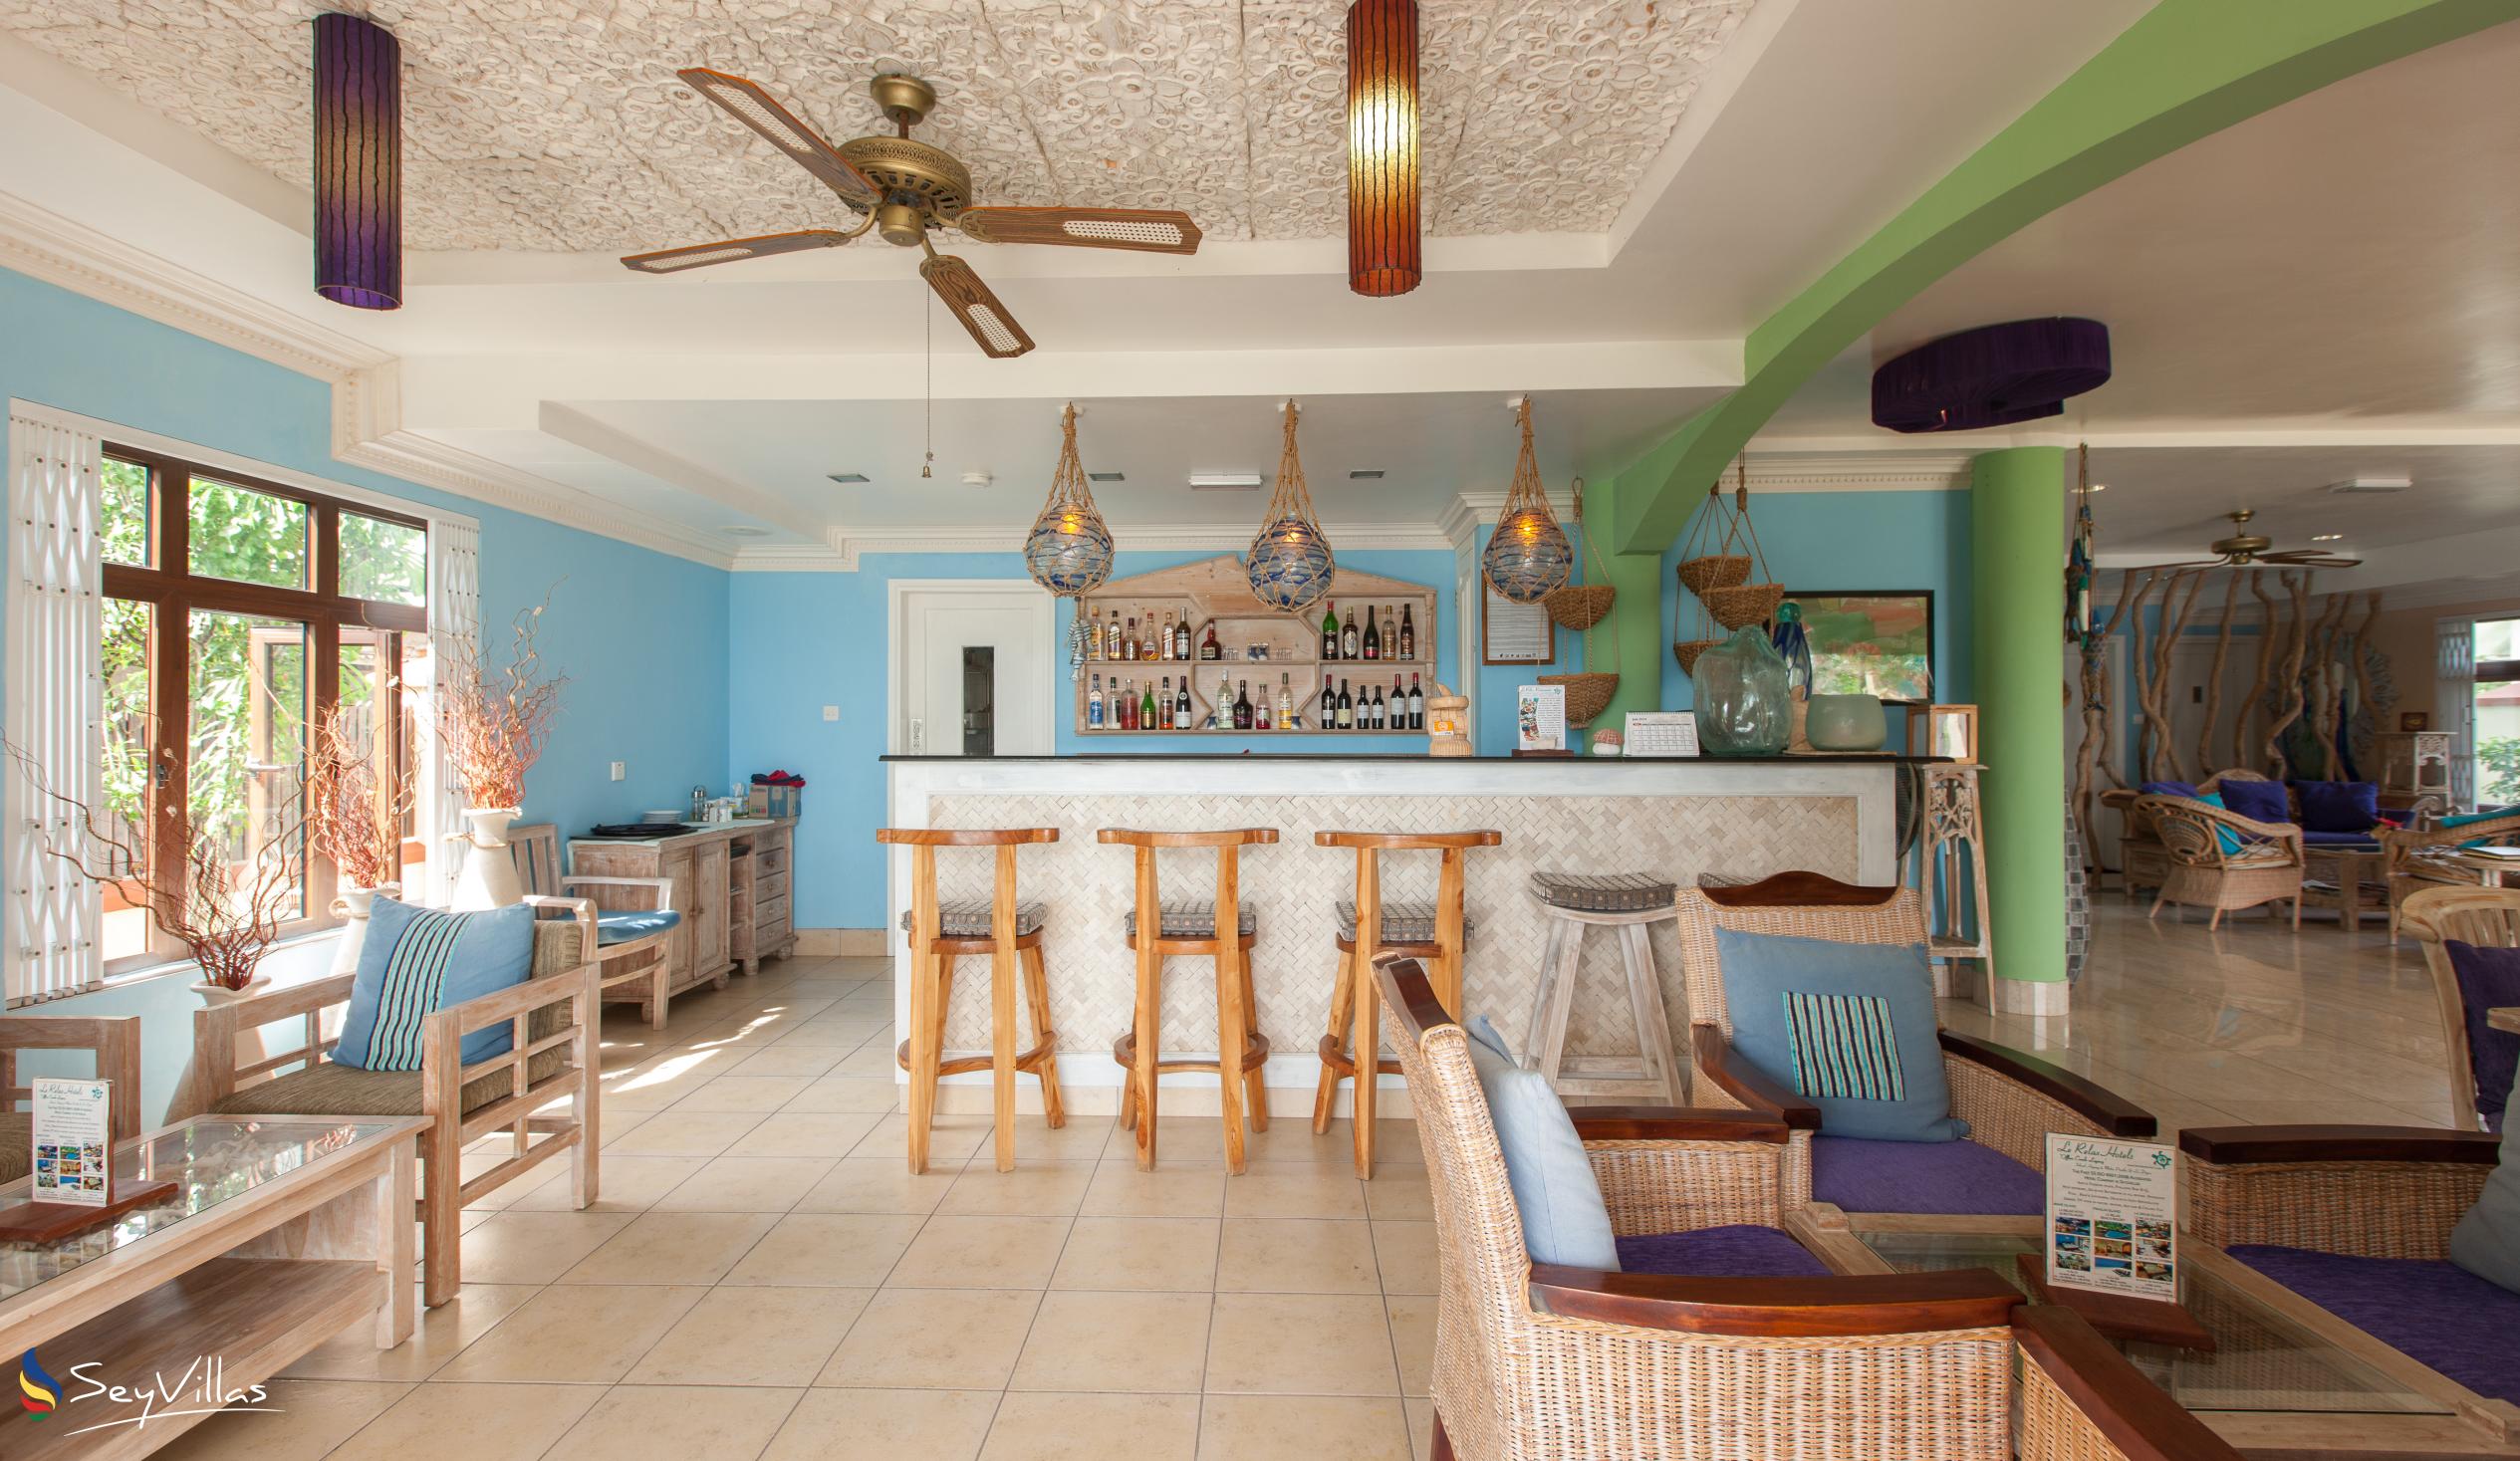 Foto 7: Le Relax Beach House - Intérieur - La Digue (Seychelles)